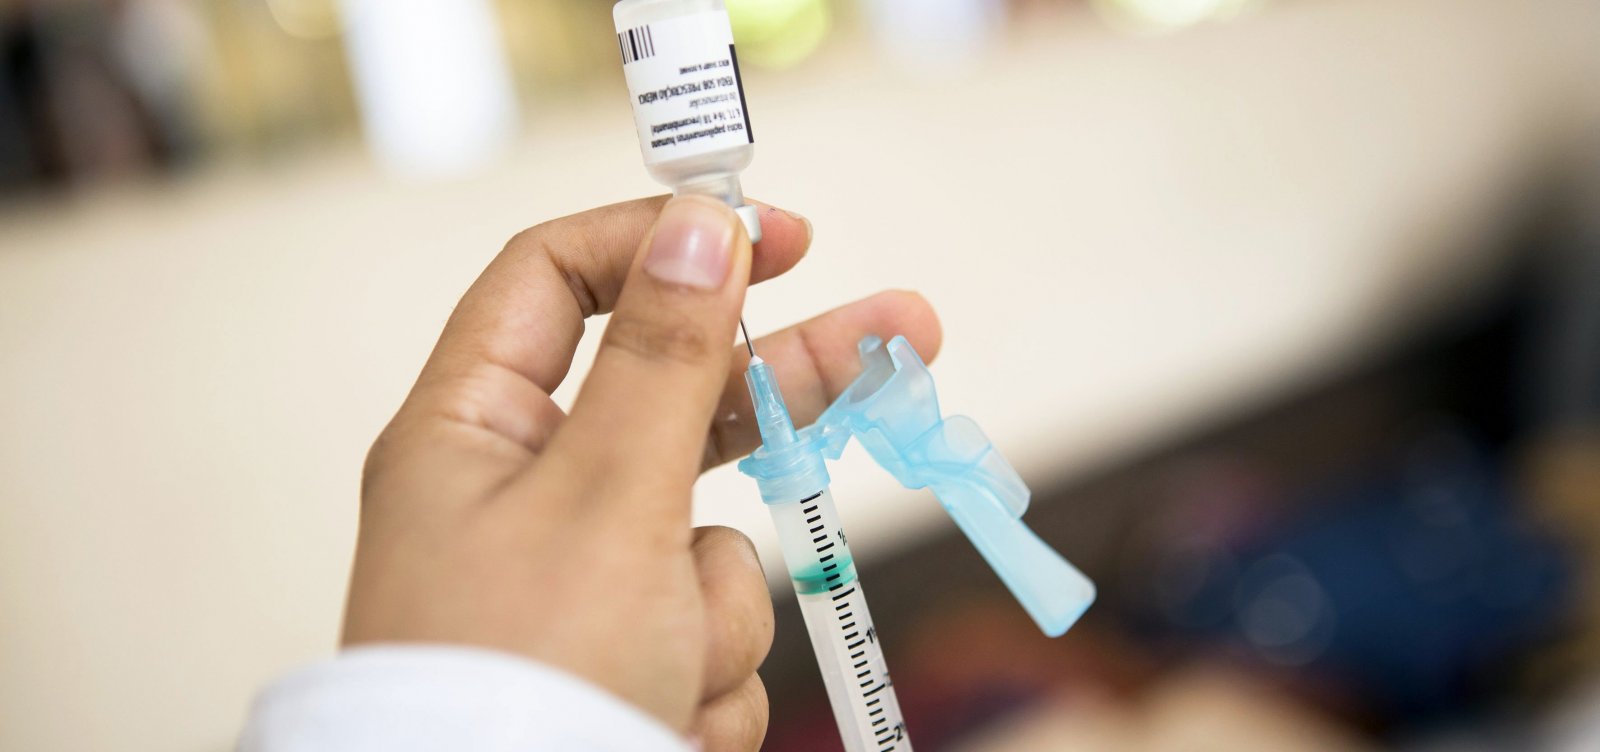 Bahia ainda não atingiu meta de vacinação contra pólio e sarampo